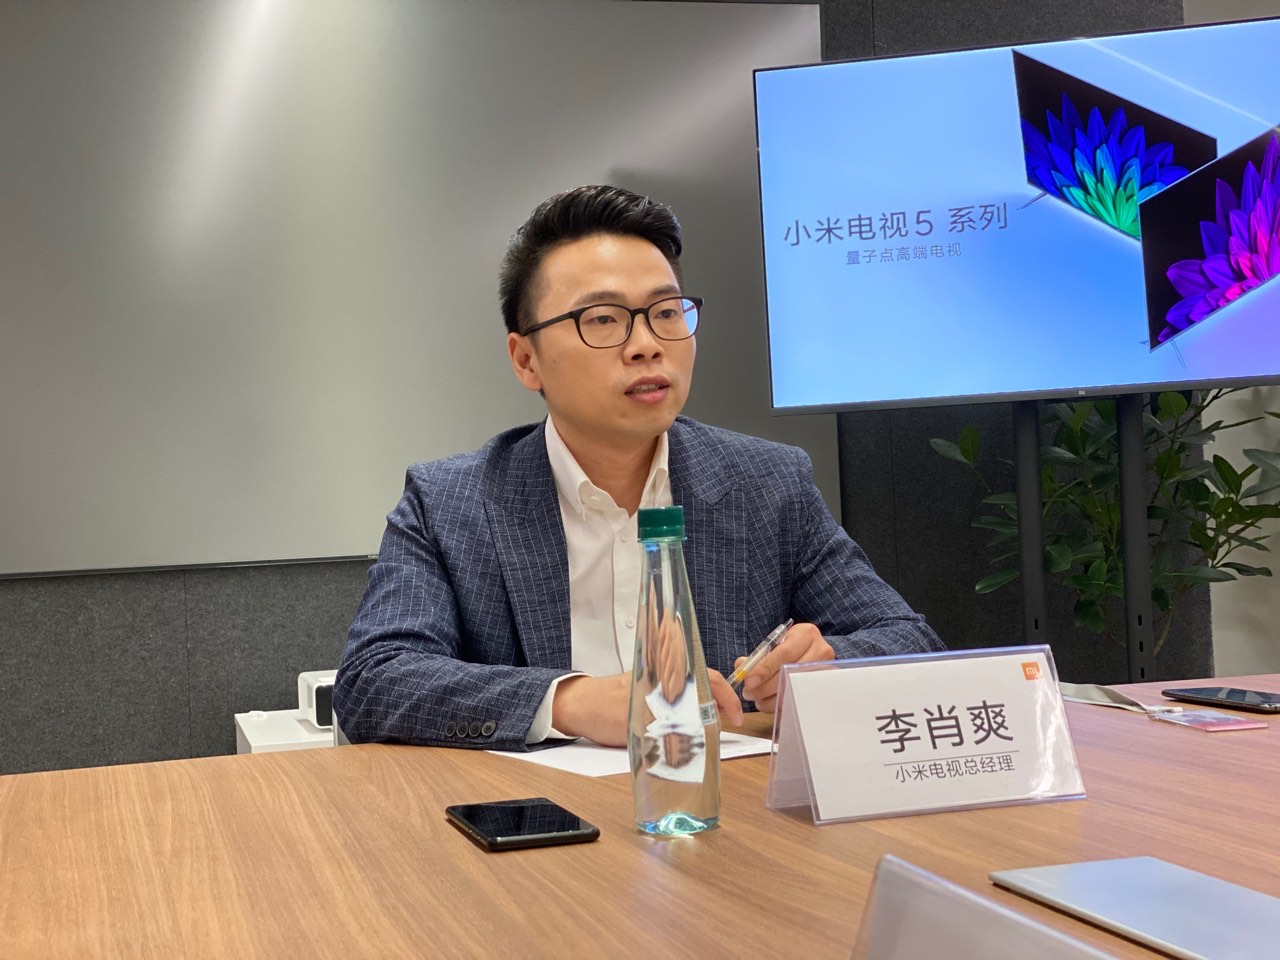 Li Xiaoshuang Xiaomi TV General Manager